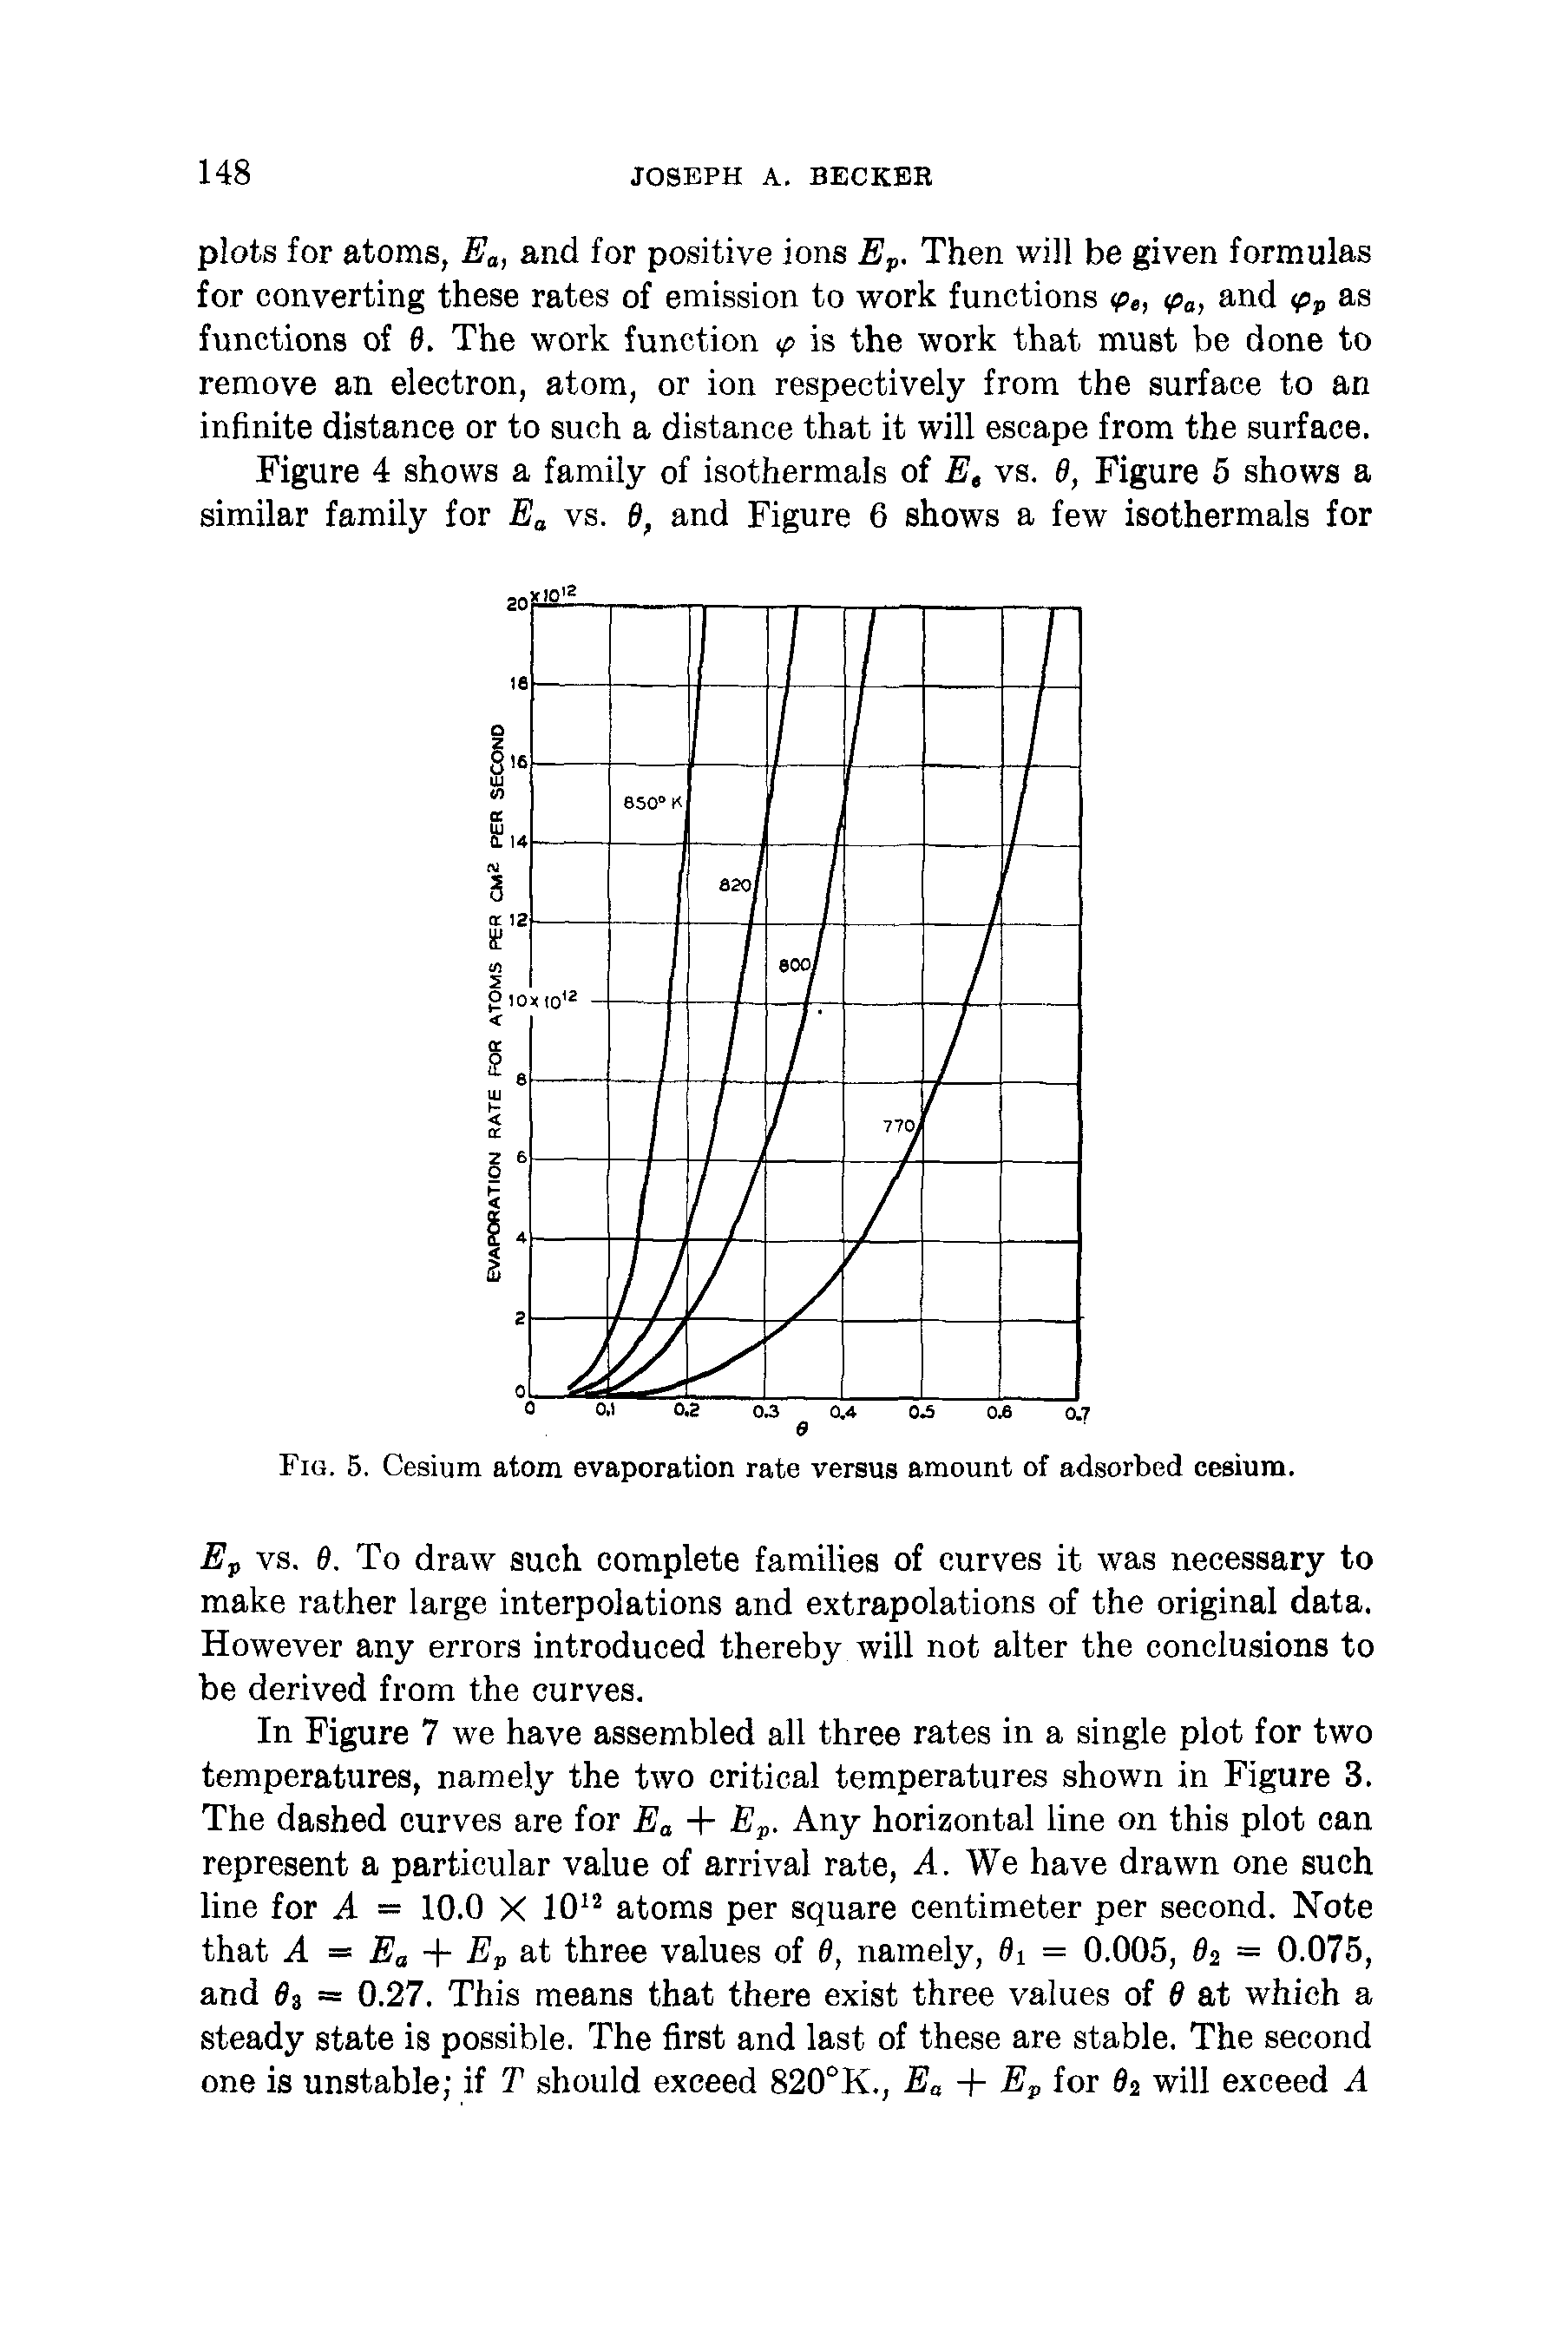 Fig. 5. Cesium atom evaporation rate versus amount of adsorbed cesium.